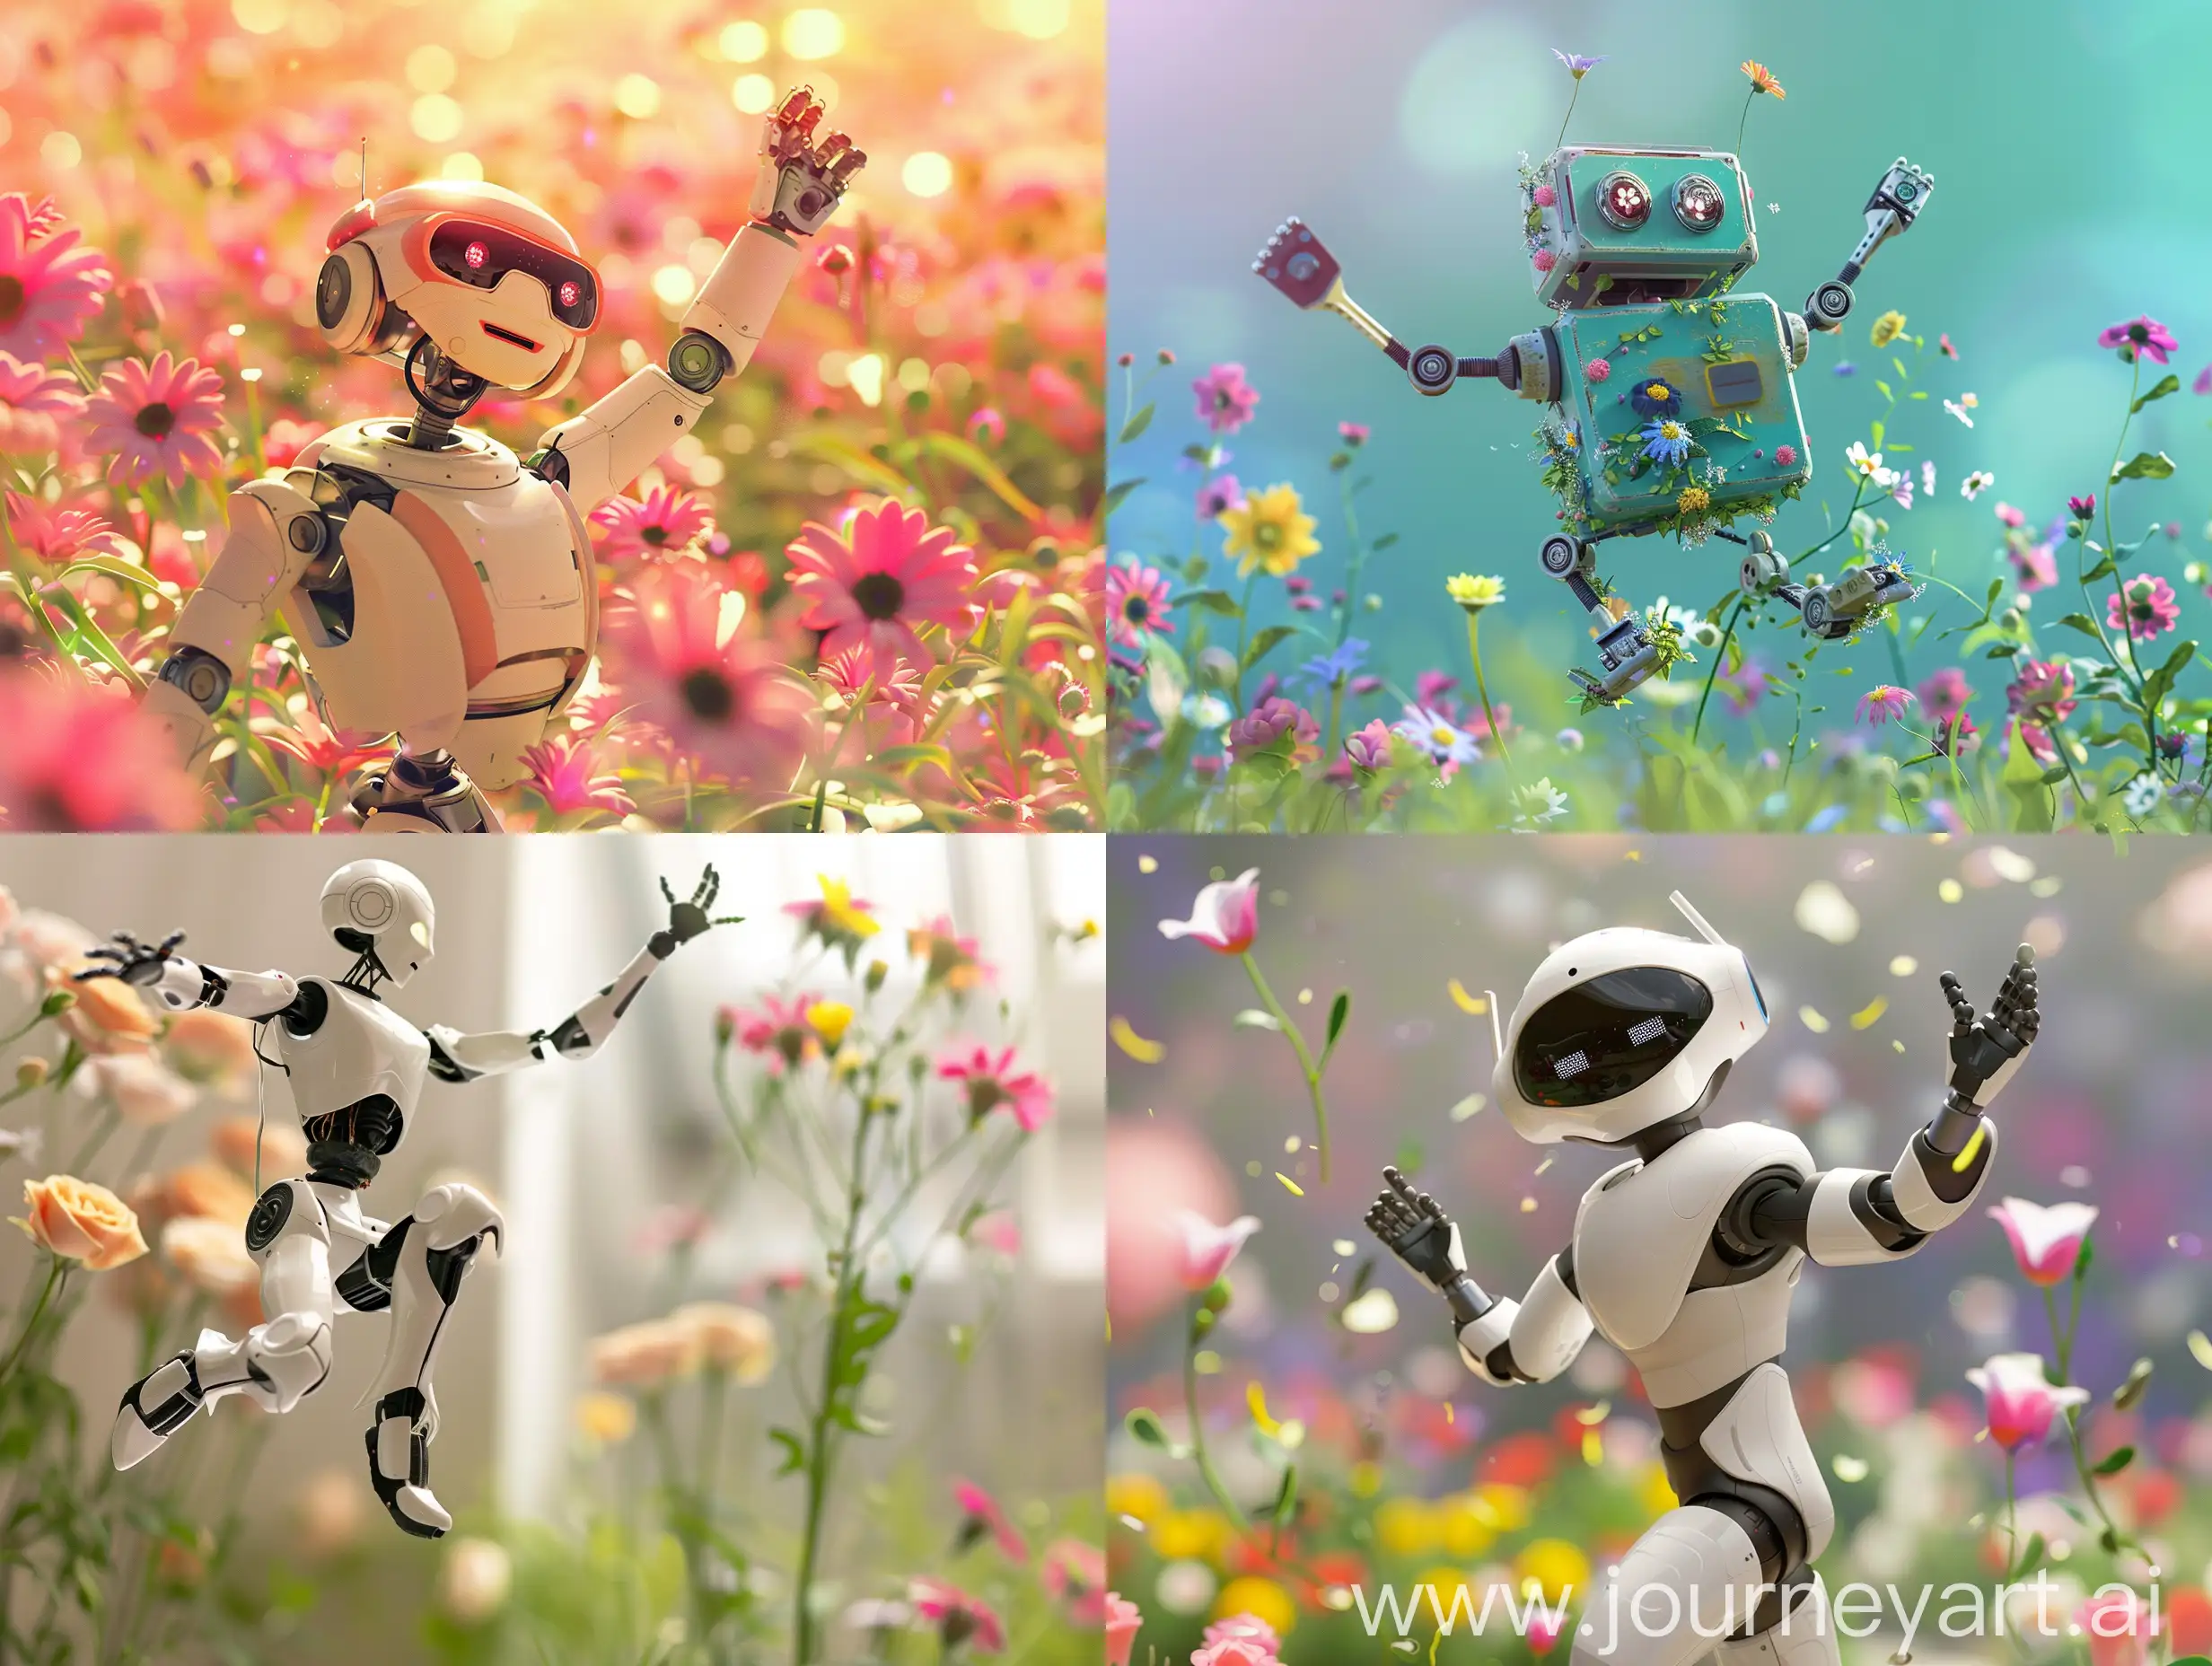 Joyful-Robot-Dancing-Among-Vibrant-Flowers